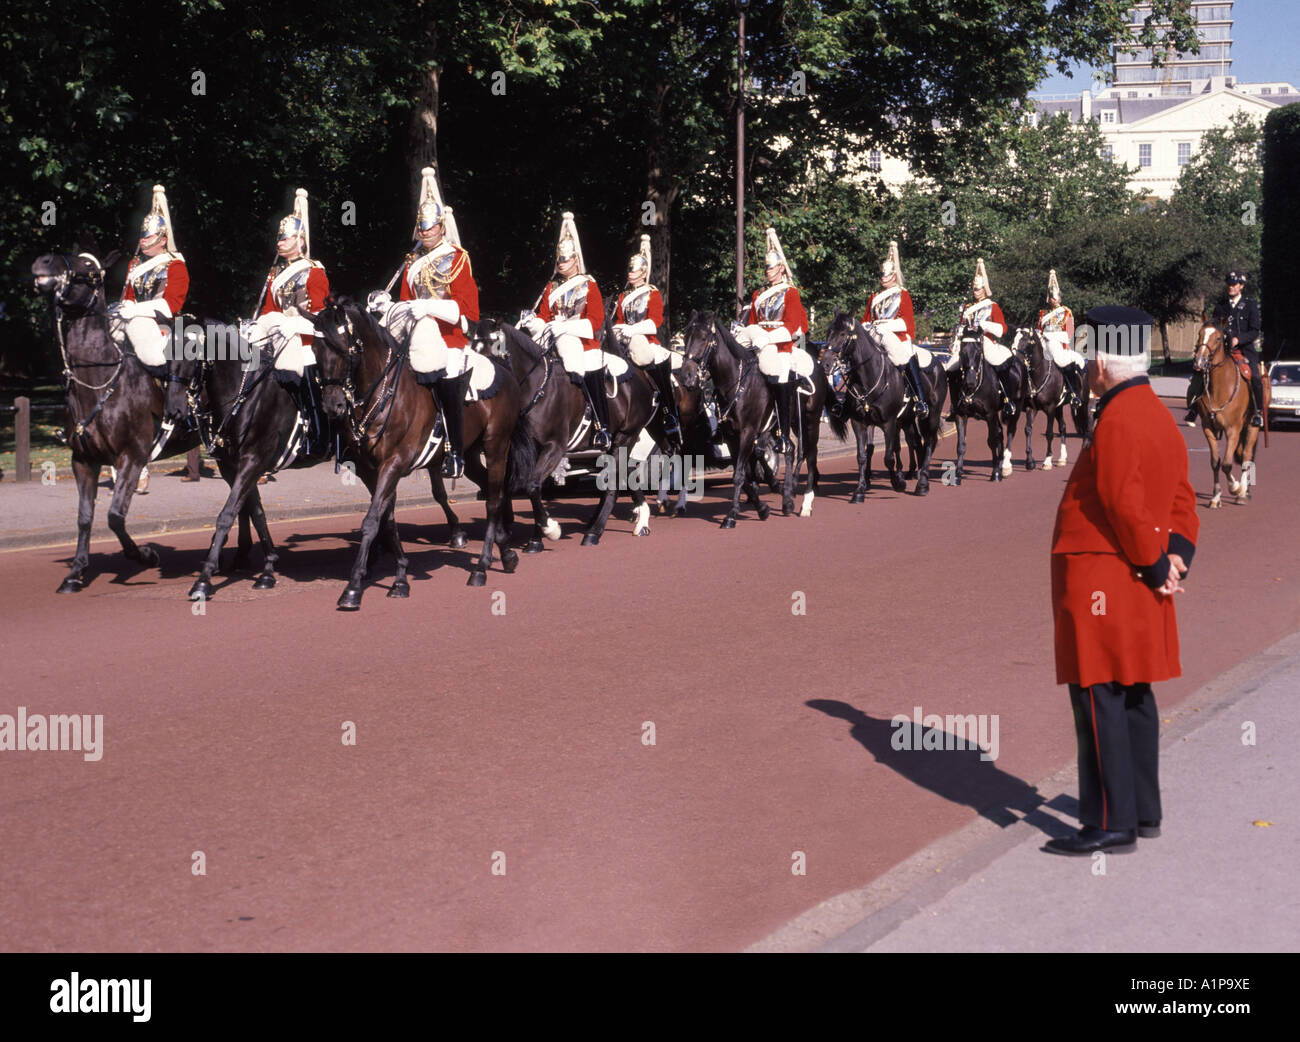 Household Cavalry Mounted Regiment Life Guards Troopers arrivant sur le terrain de parade des Horse Guards surveillés par un retraité de Chelsea en uniforme Londres Angleterre Banque D'Images